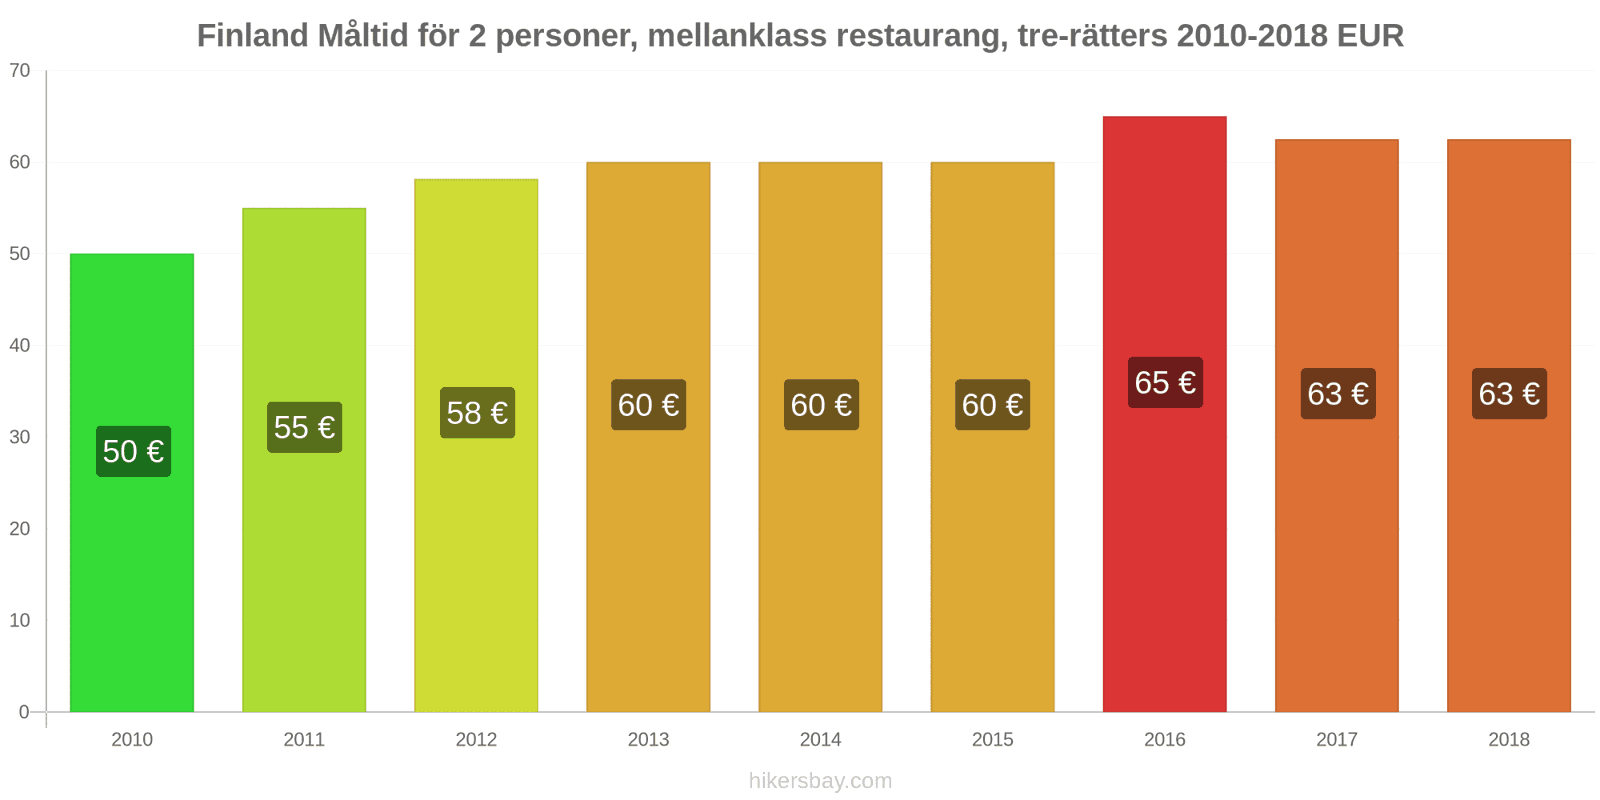 Finland prisändringar Måltid för 2 personer, mellanklass restaurang, tre rätter hikersbay.com